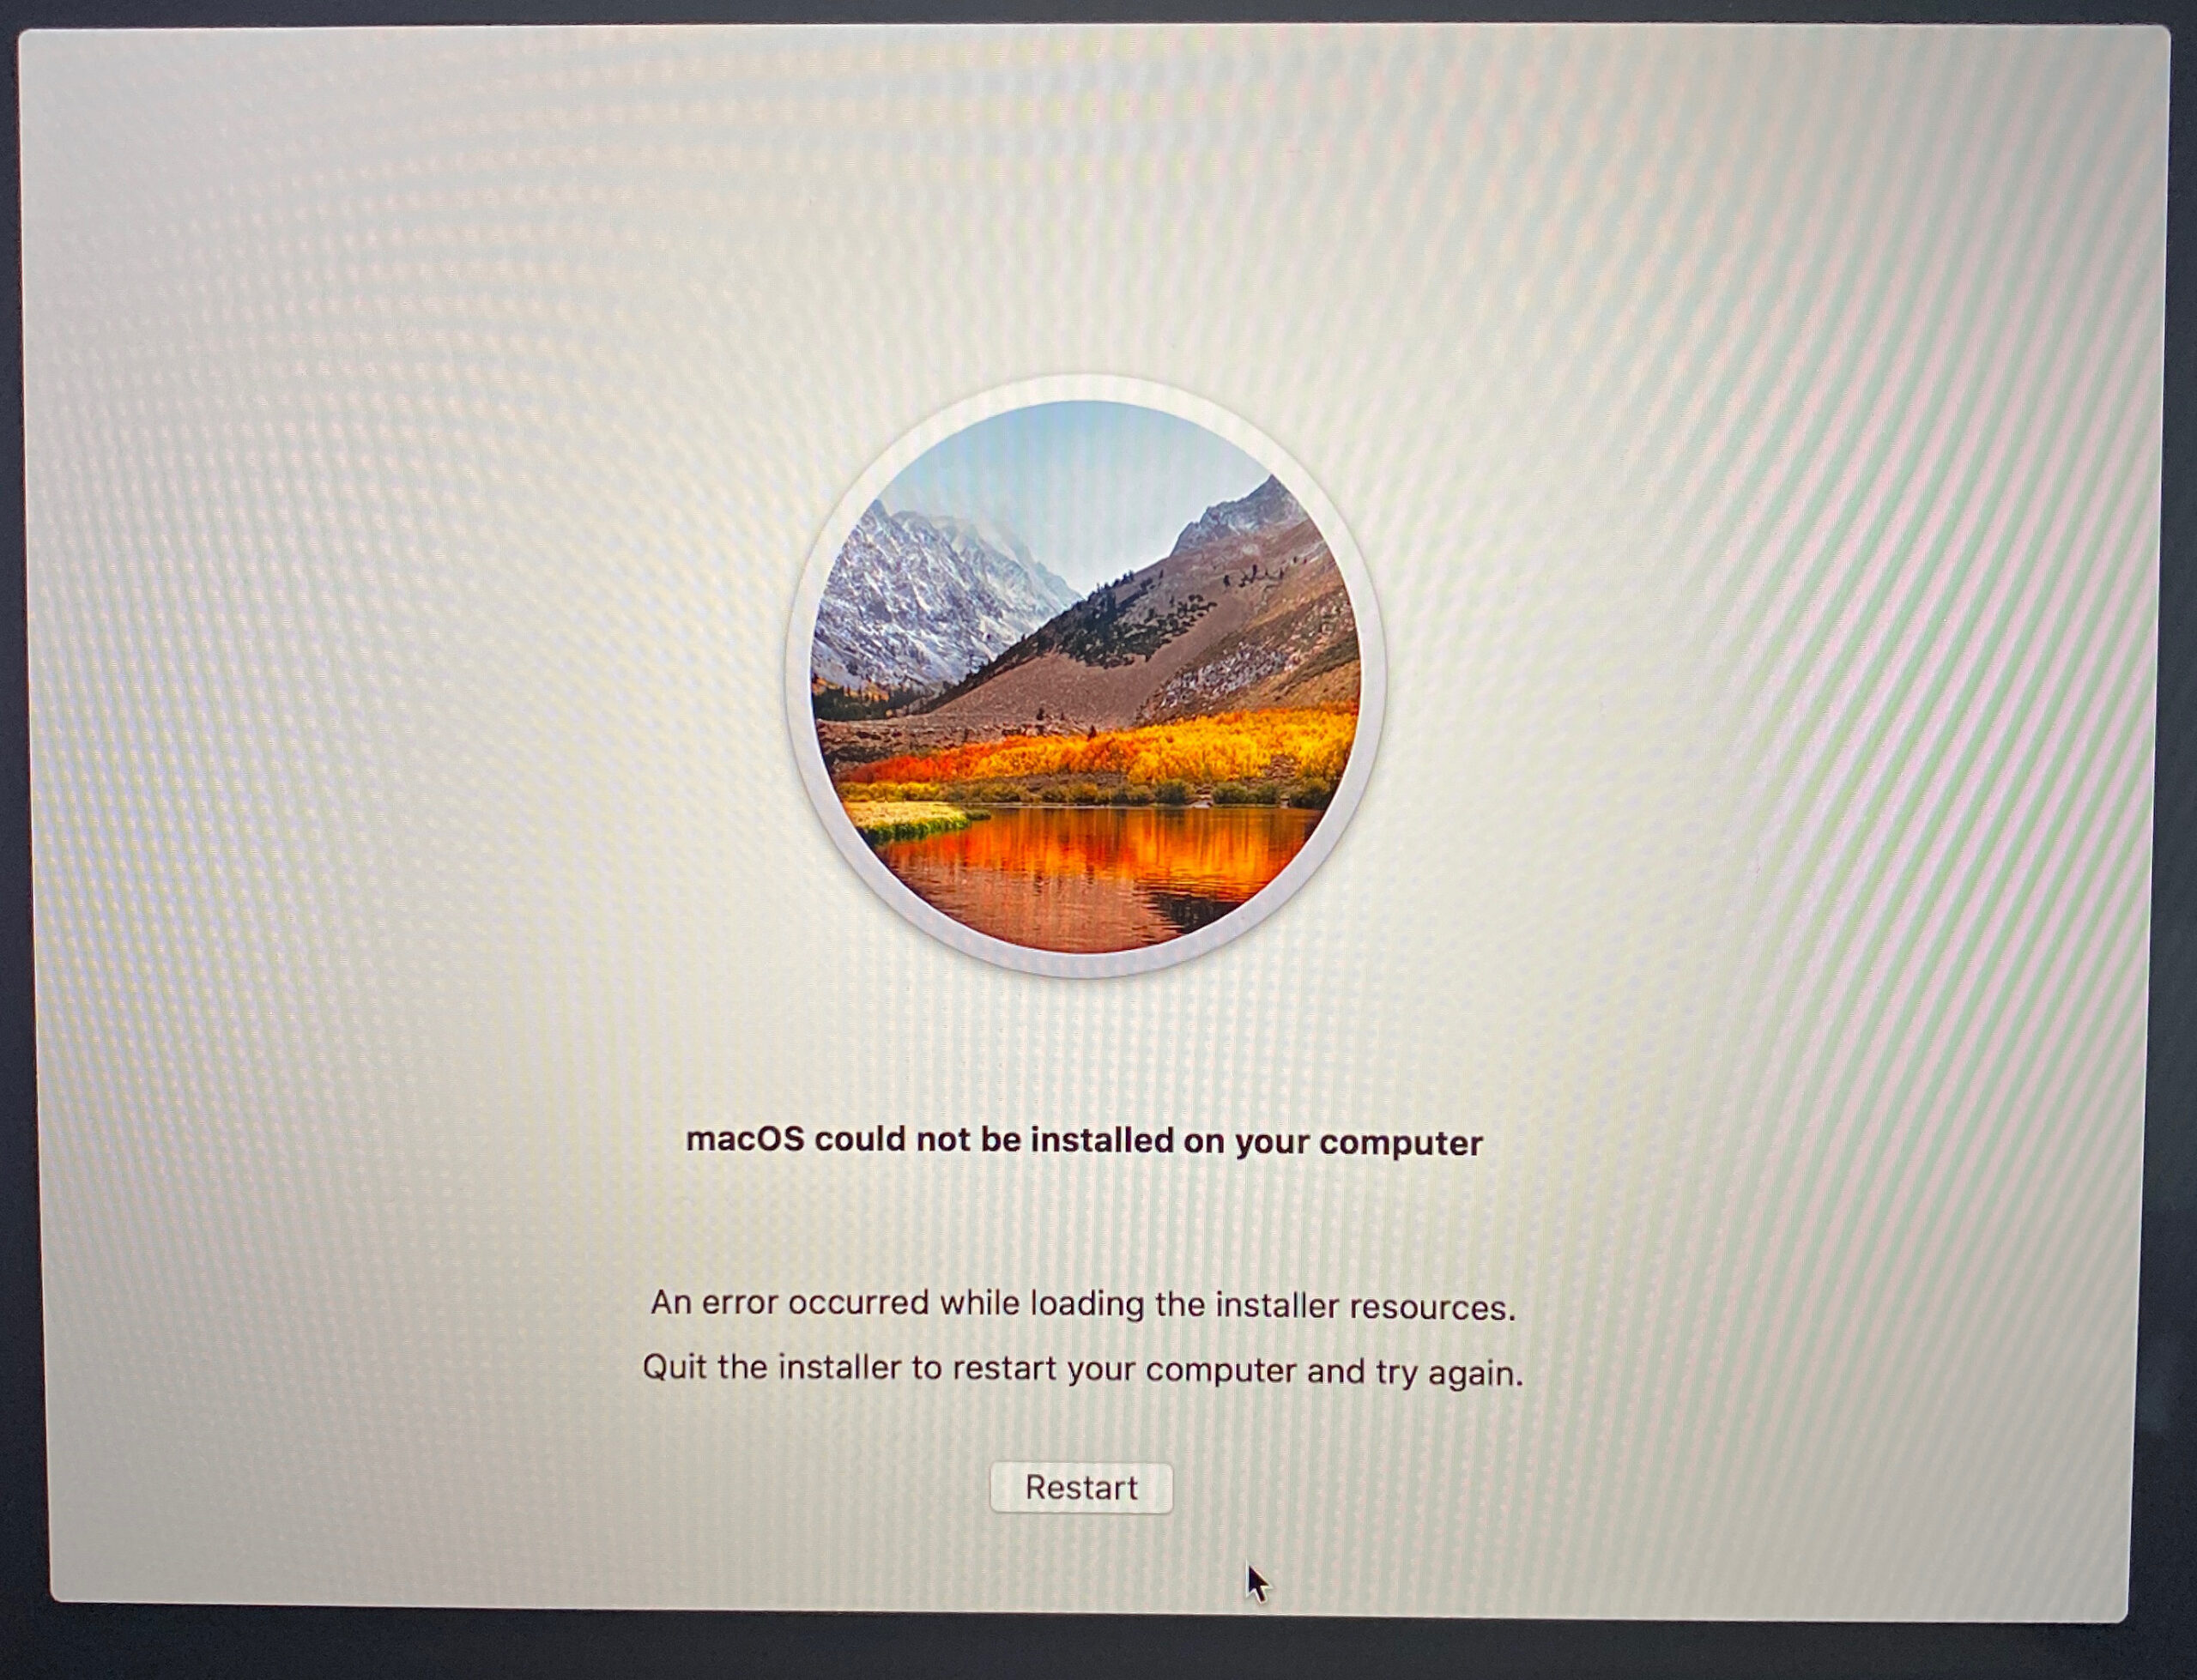 Il messaggio di errore principale del bug di MacOS non può essere installato è il seguente